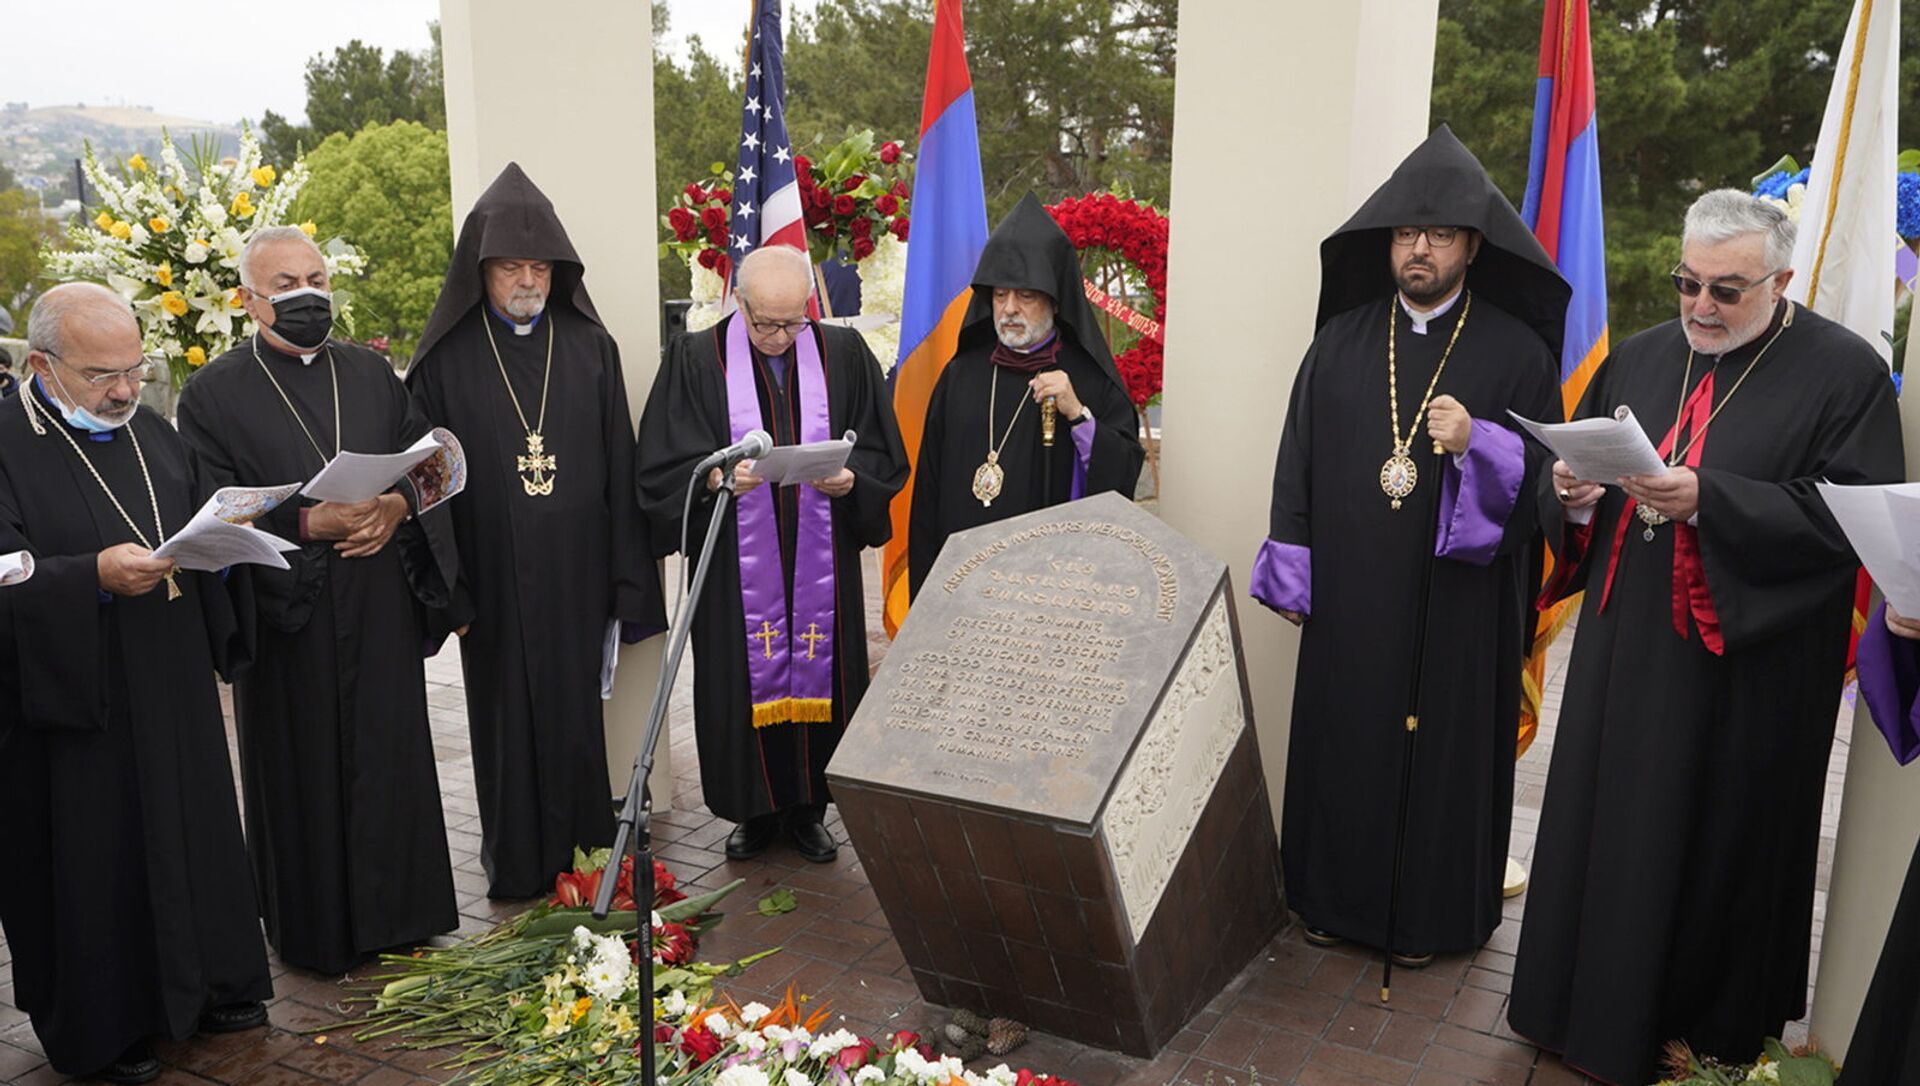 Религиозные лидеры поют на церемонии памяти жертв Геноцида армян у монумента Геноцида армян в Монтебелло (24 апреля 2021). Калифорния - Sputnik Արմենիա, 1920, 25.04.2021